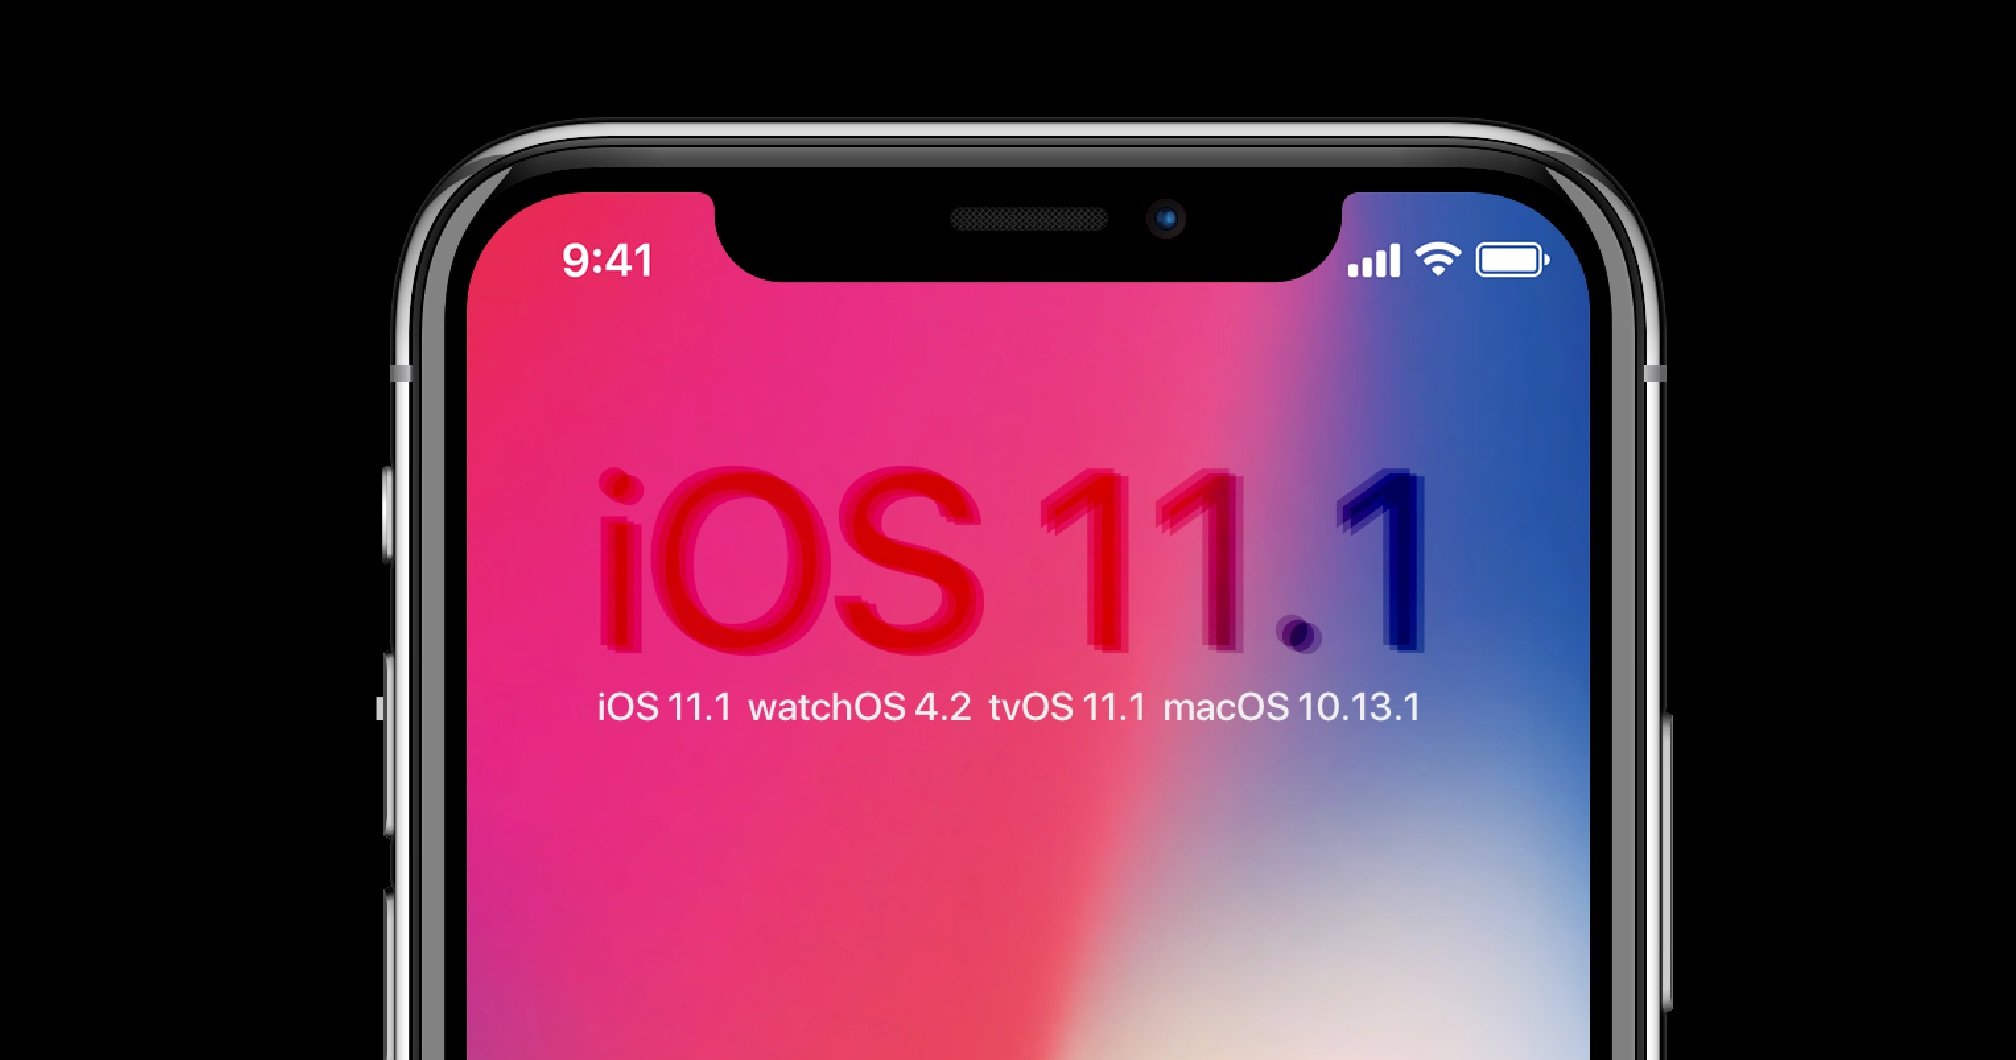 Update: iOS 11.1, watchOS 4.1, tvOS 11.1 & macOS High Sierra 10.13.1 4